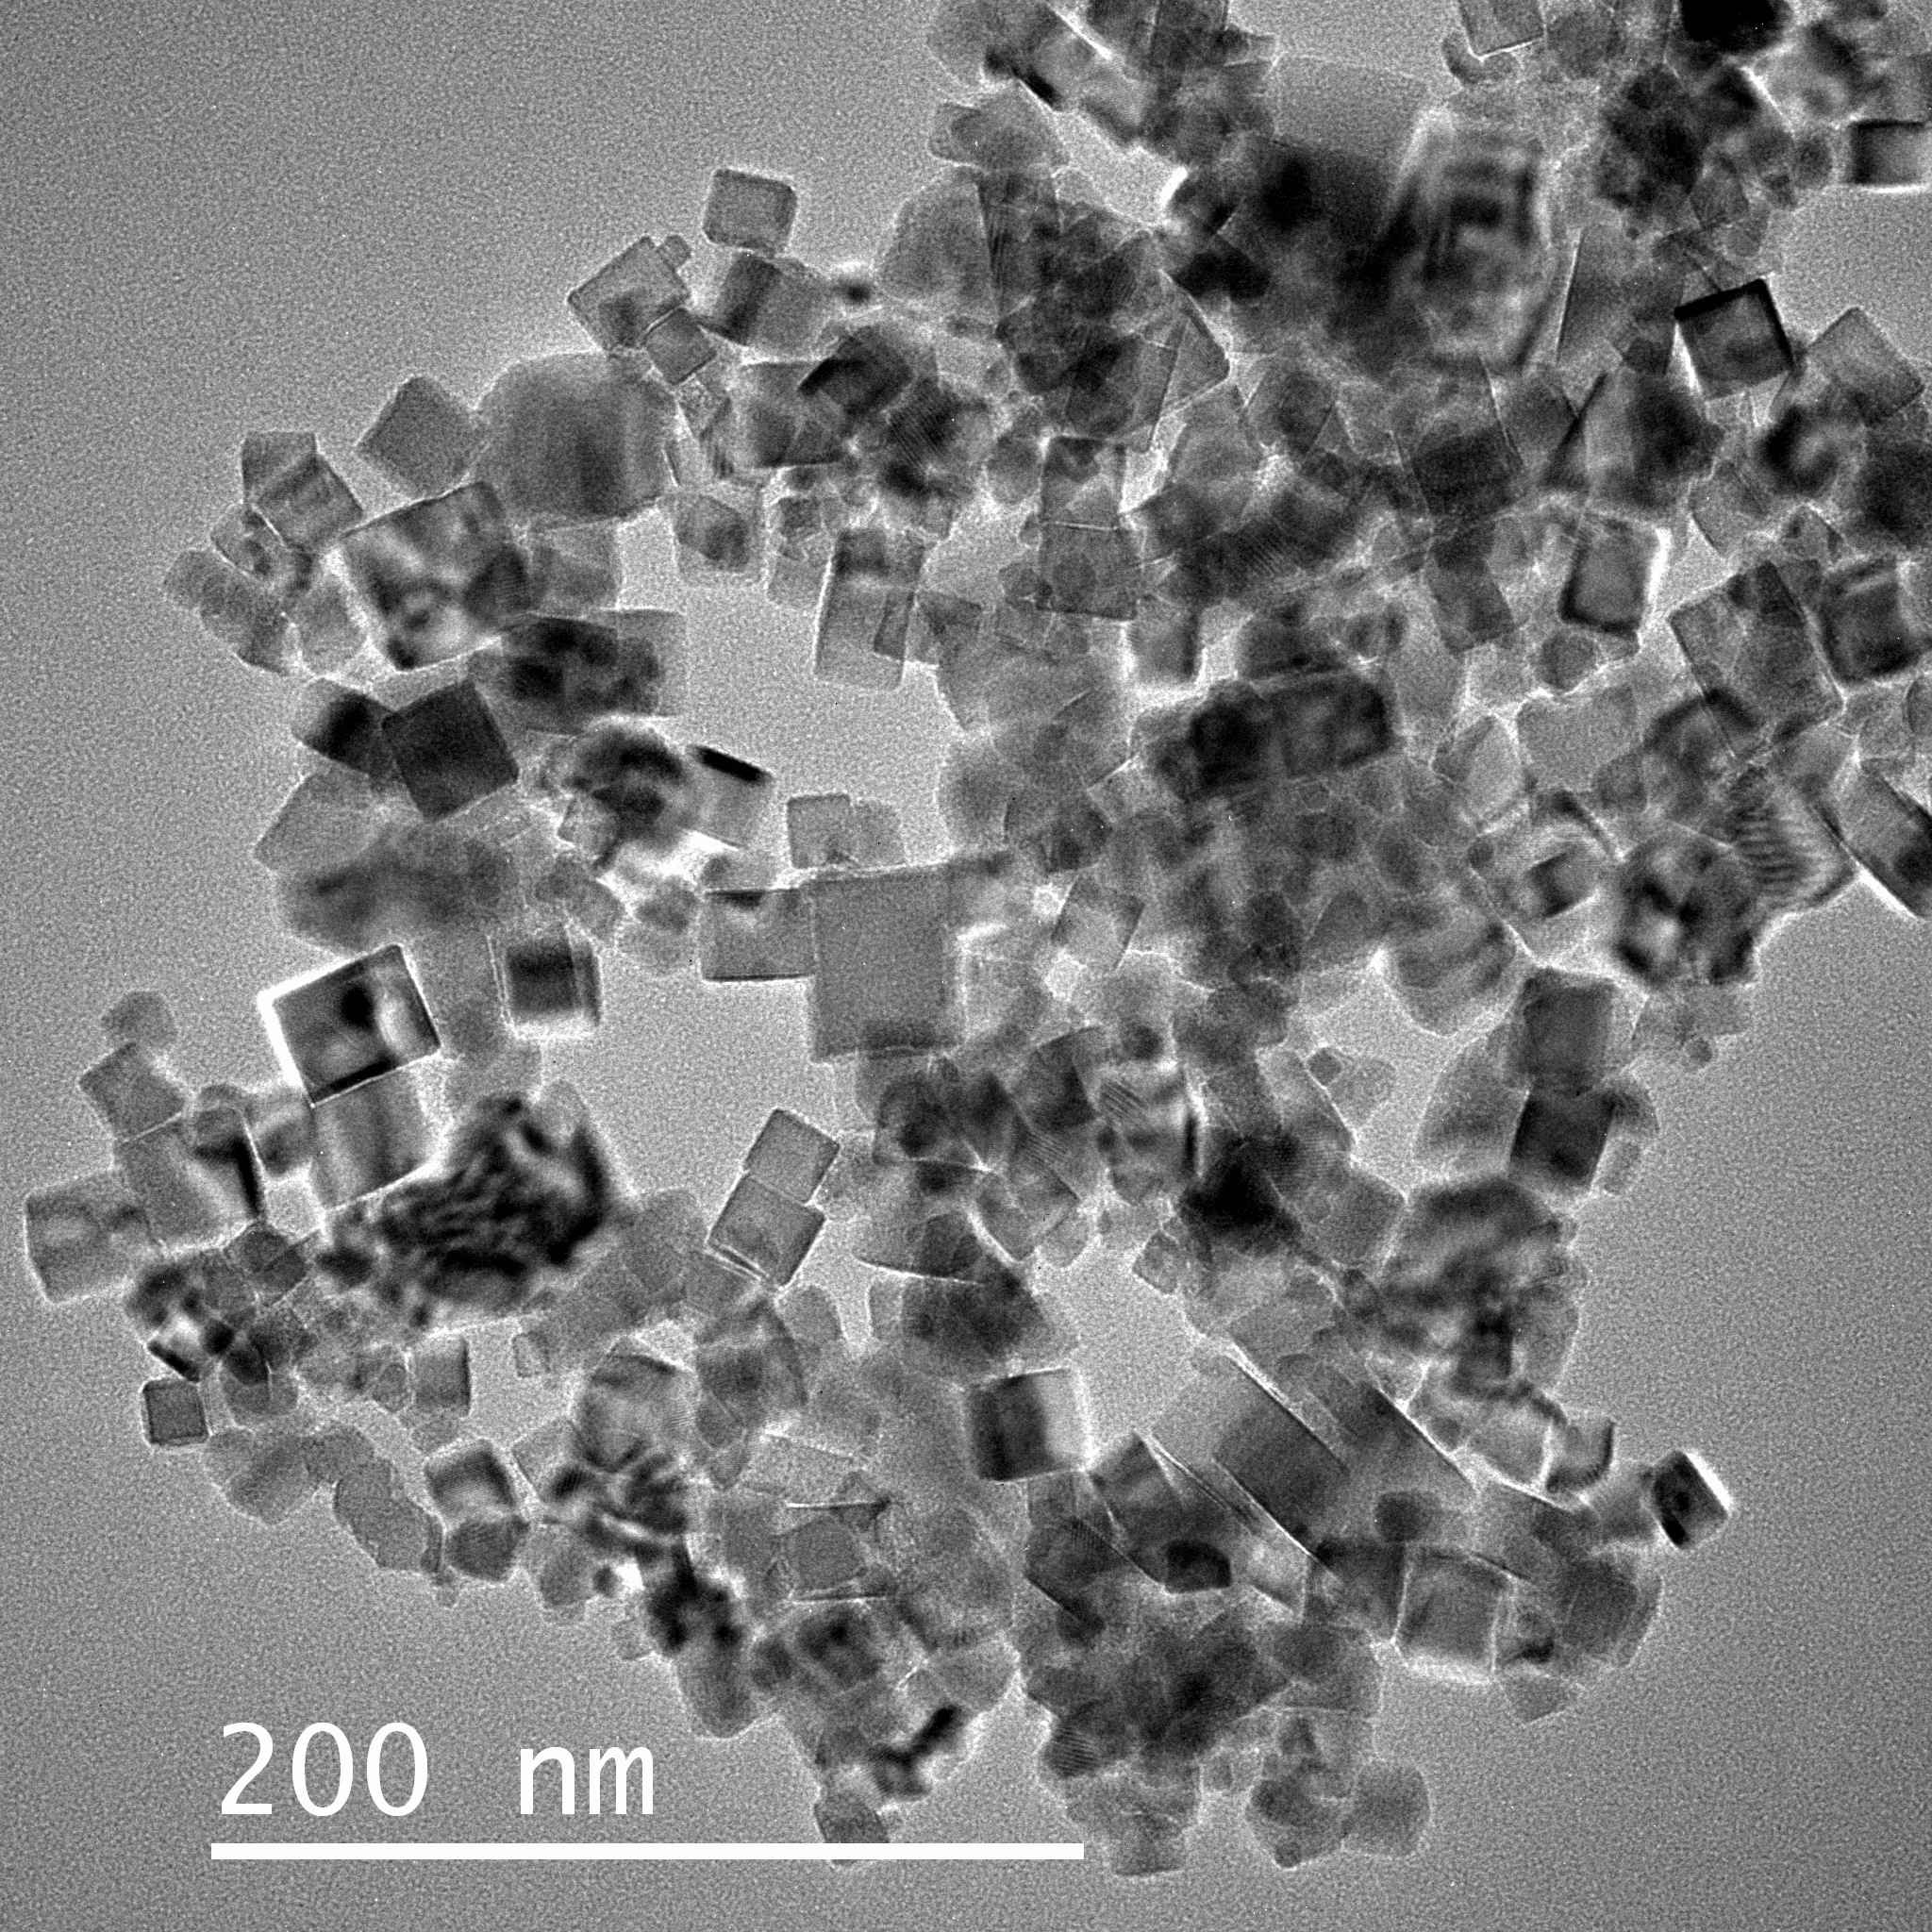 科学网—认识一组奇特的显微矿物“花” - 贺静的博文